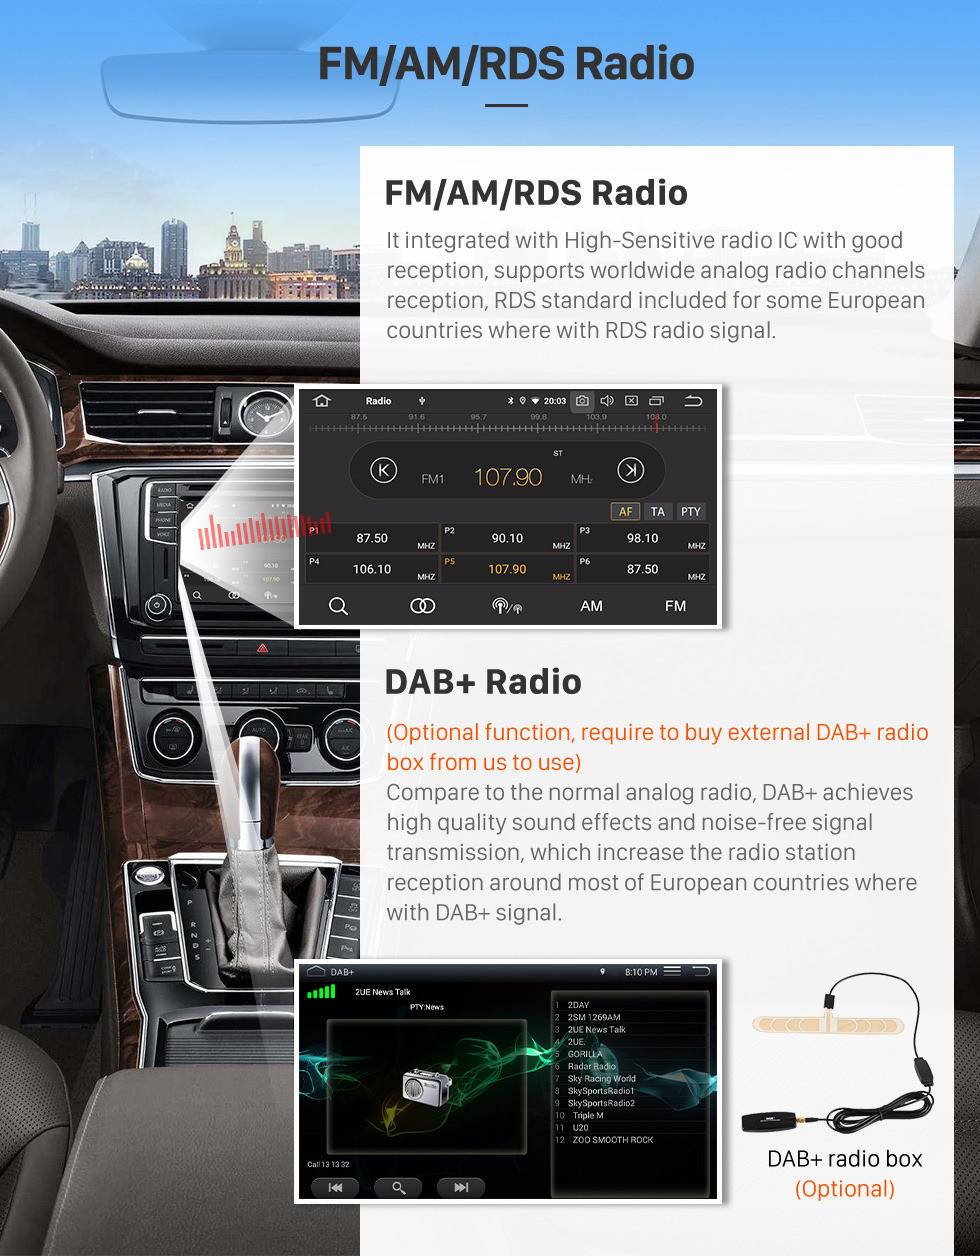 Seicane 9 pouces Android 11.0 Radio de navigation GPS pour 2015 Suzuki Wagon avec HD Ecran tactile Carplay AUX Bluetooth Soutien 1080P